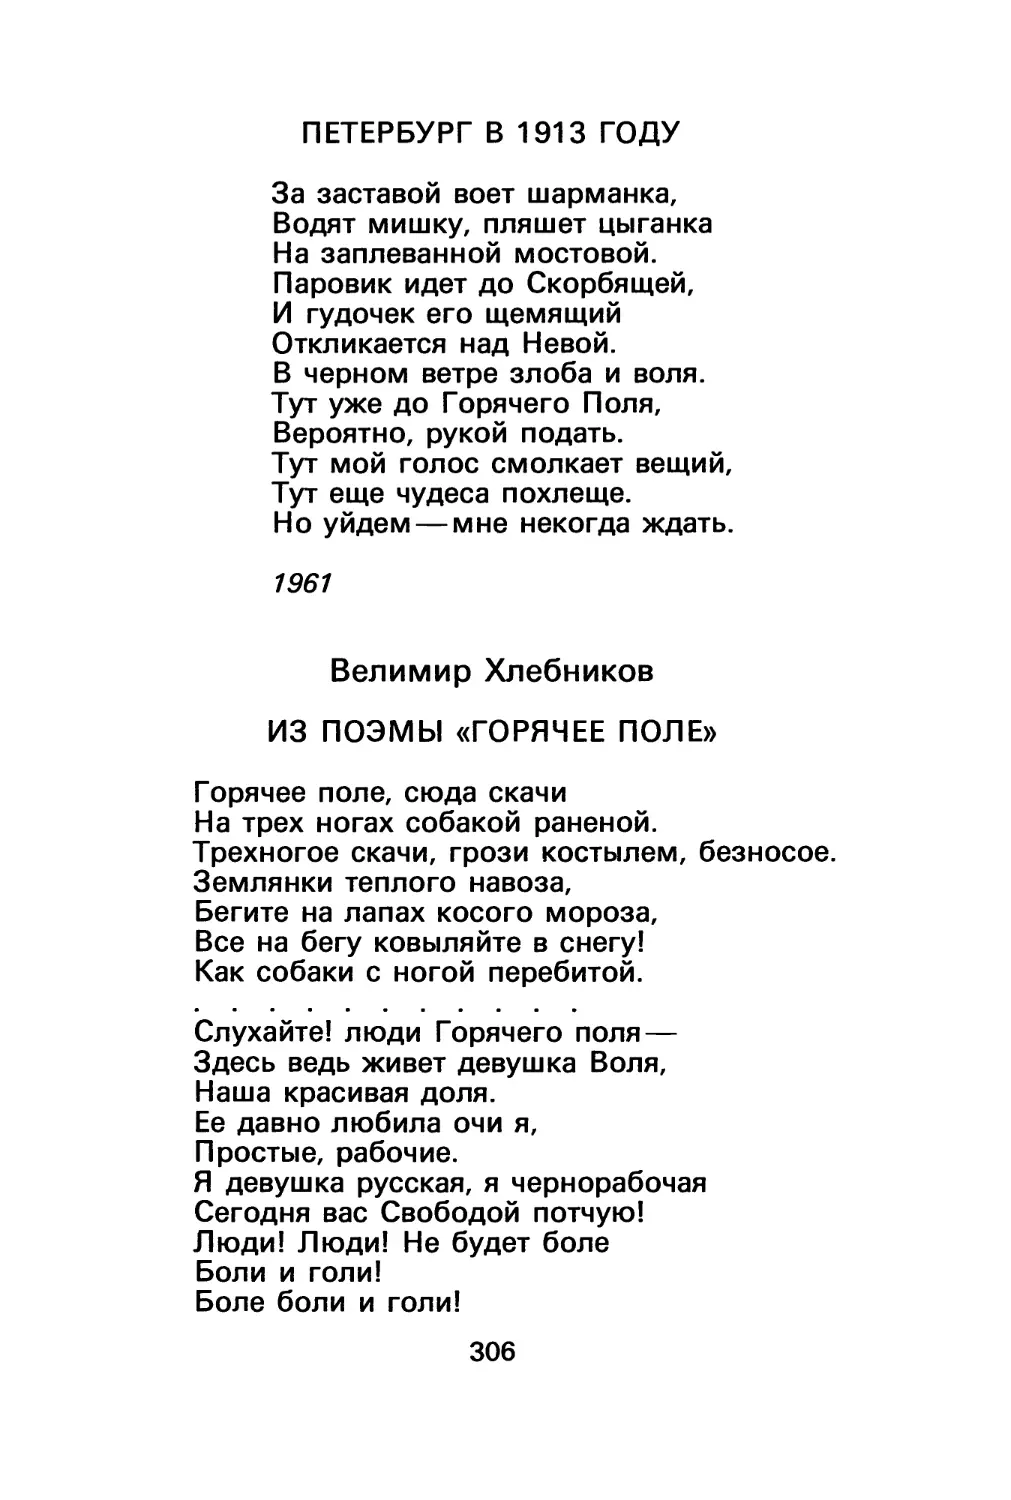 А. Ахматова. Петербург в 1913 году
В. Хлебников. Из поэмы «Горячее поле»